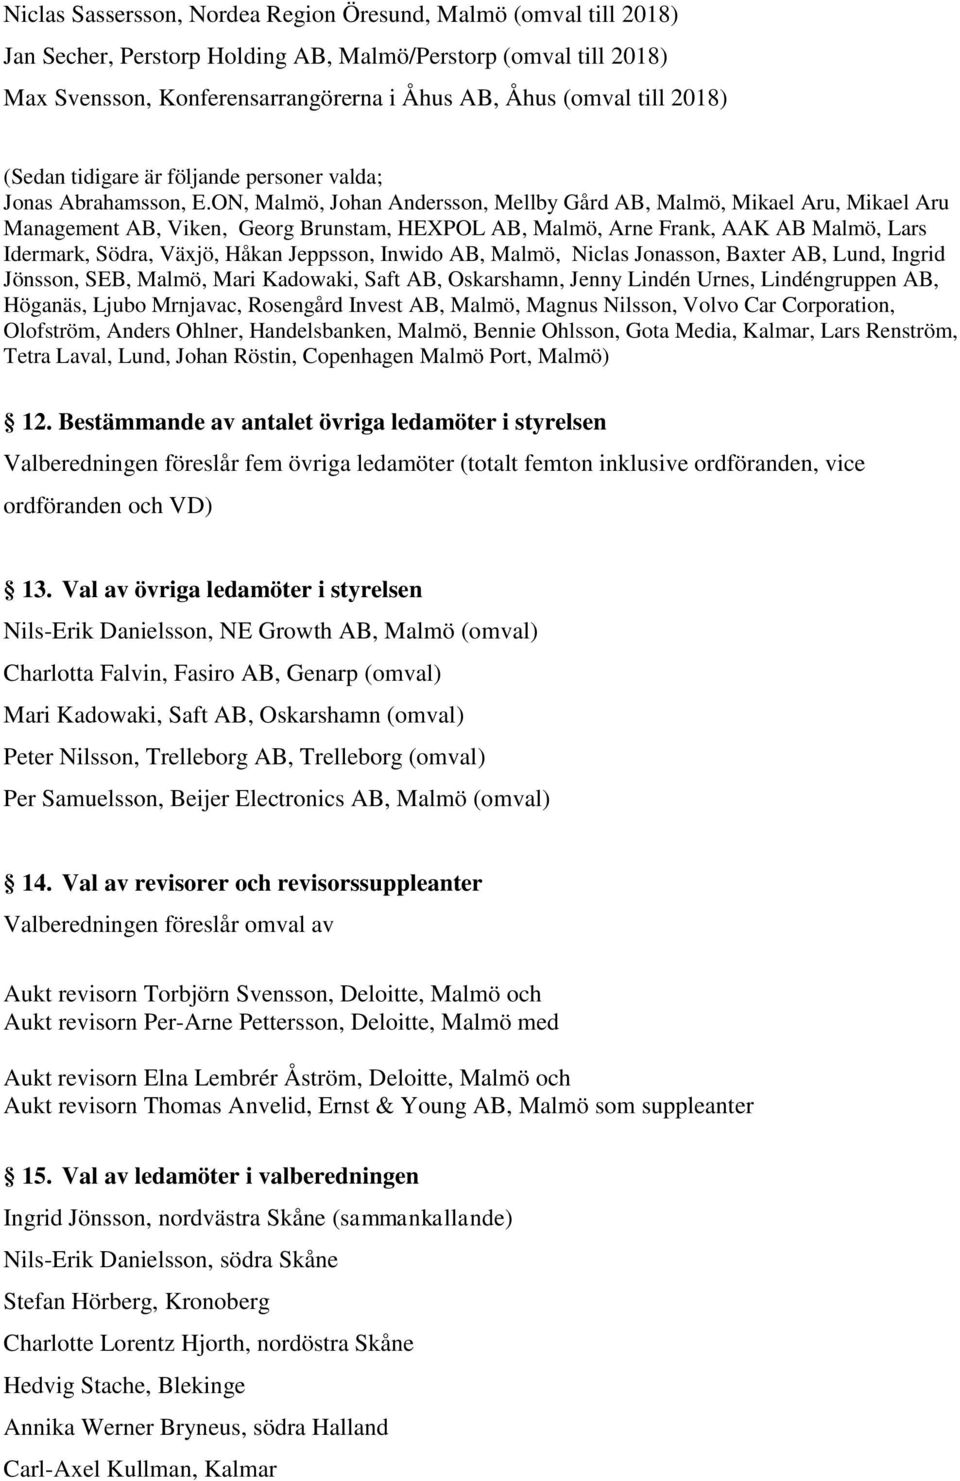 ON, Malmö, Johan Andersson, Mellby Gård AB, Malmö, Mikael Aru, Mikael Aru Management AB, Viken, Georg Brunstam, HEXPOL AB, Malmö, Arne Frank, AAK AB Malmö, Lars Idermark, Södra, Växjö, Håkan